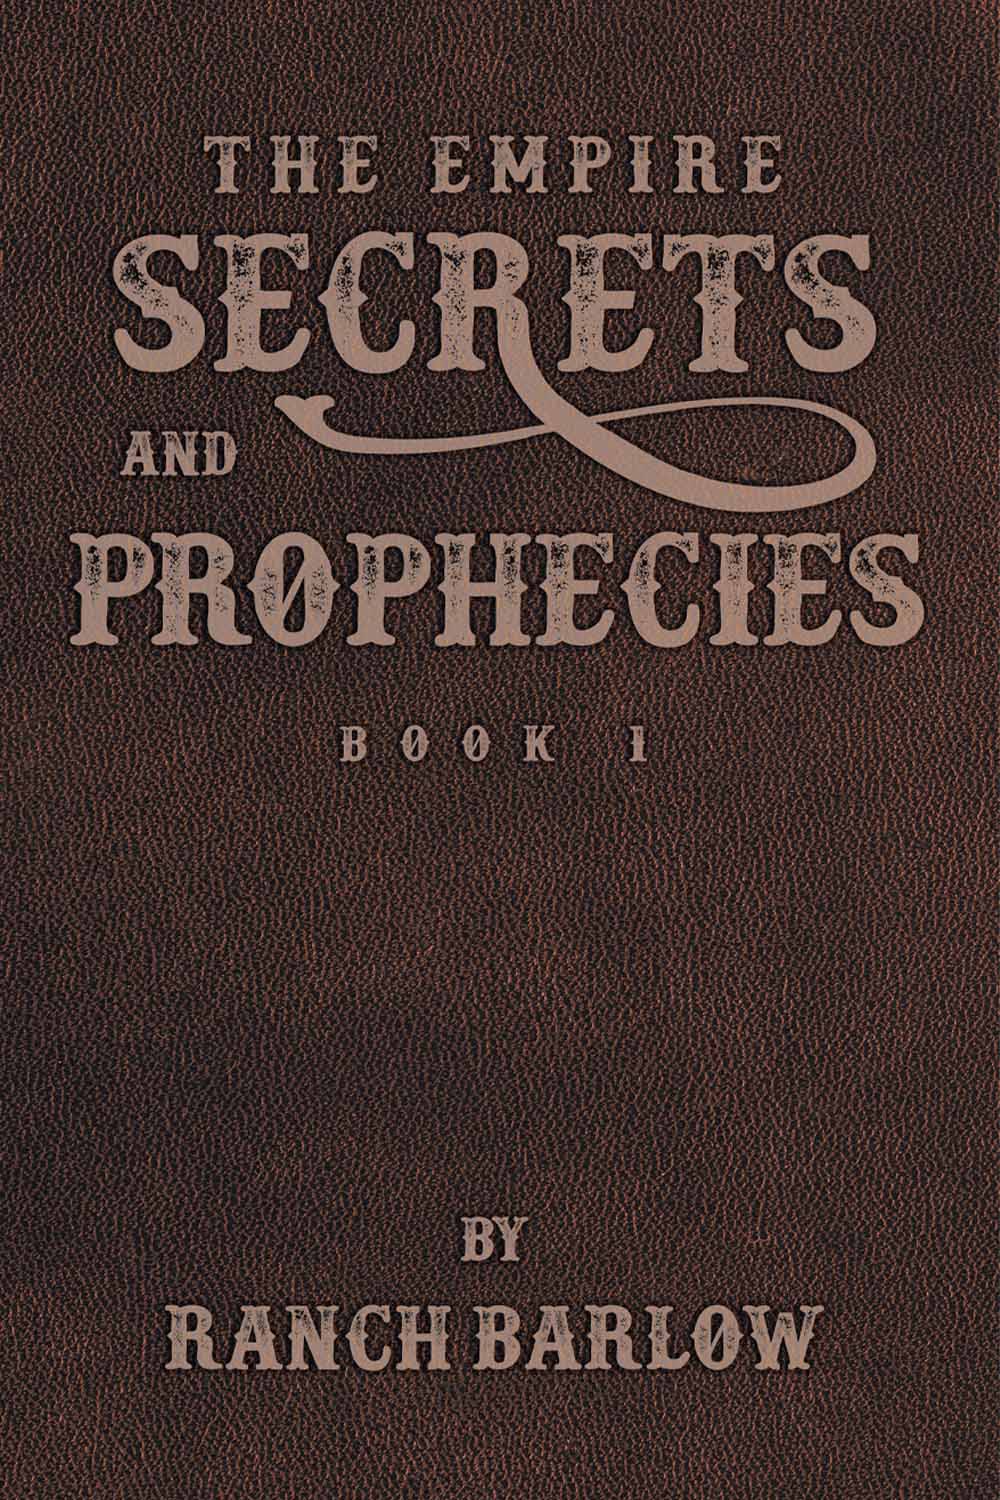 Secrets and Prophecies